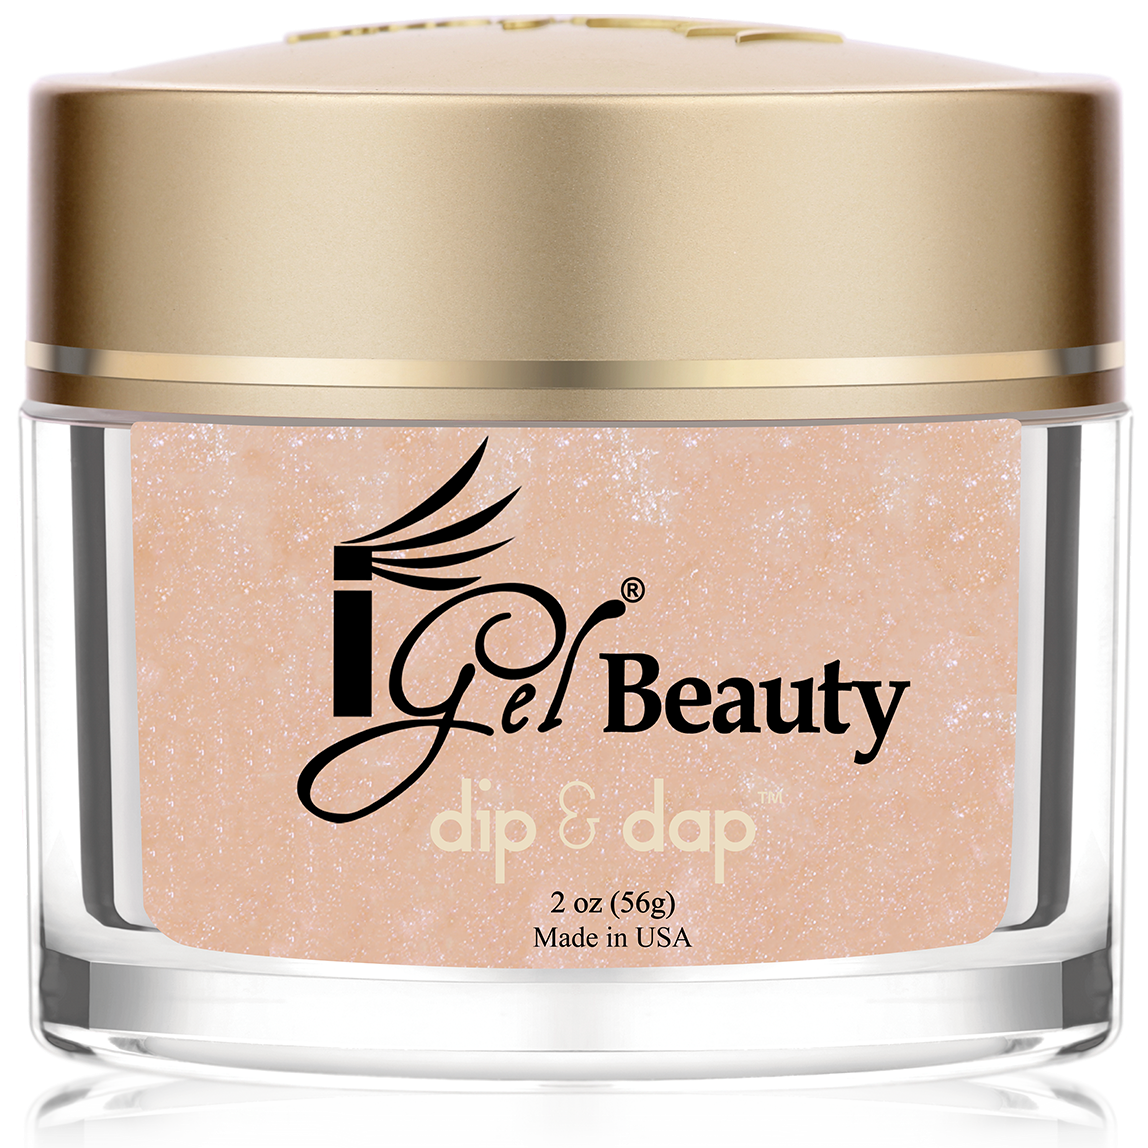 iGel Beauty - Dip & Dap Powder - DD171 Radiance